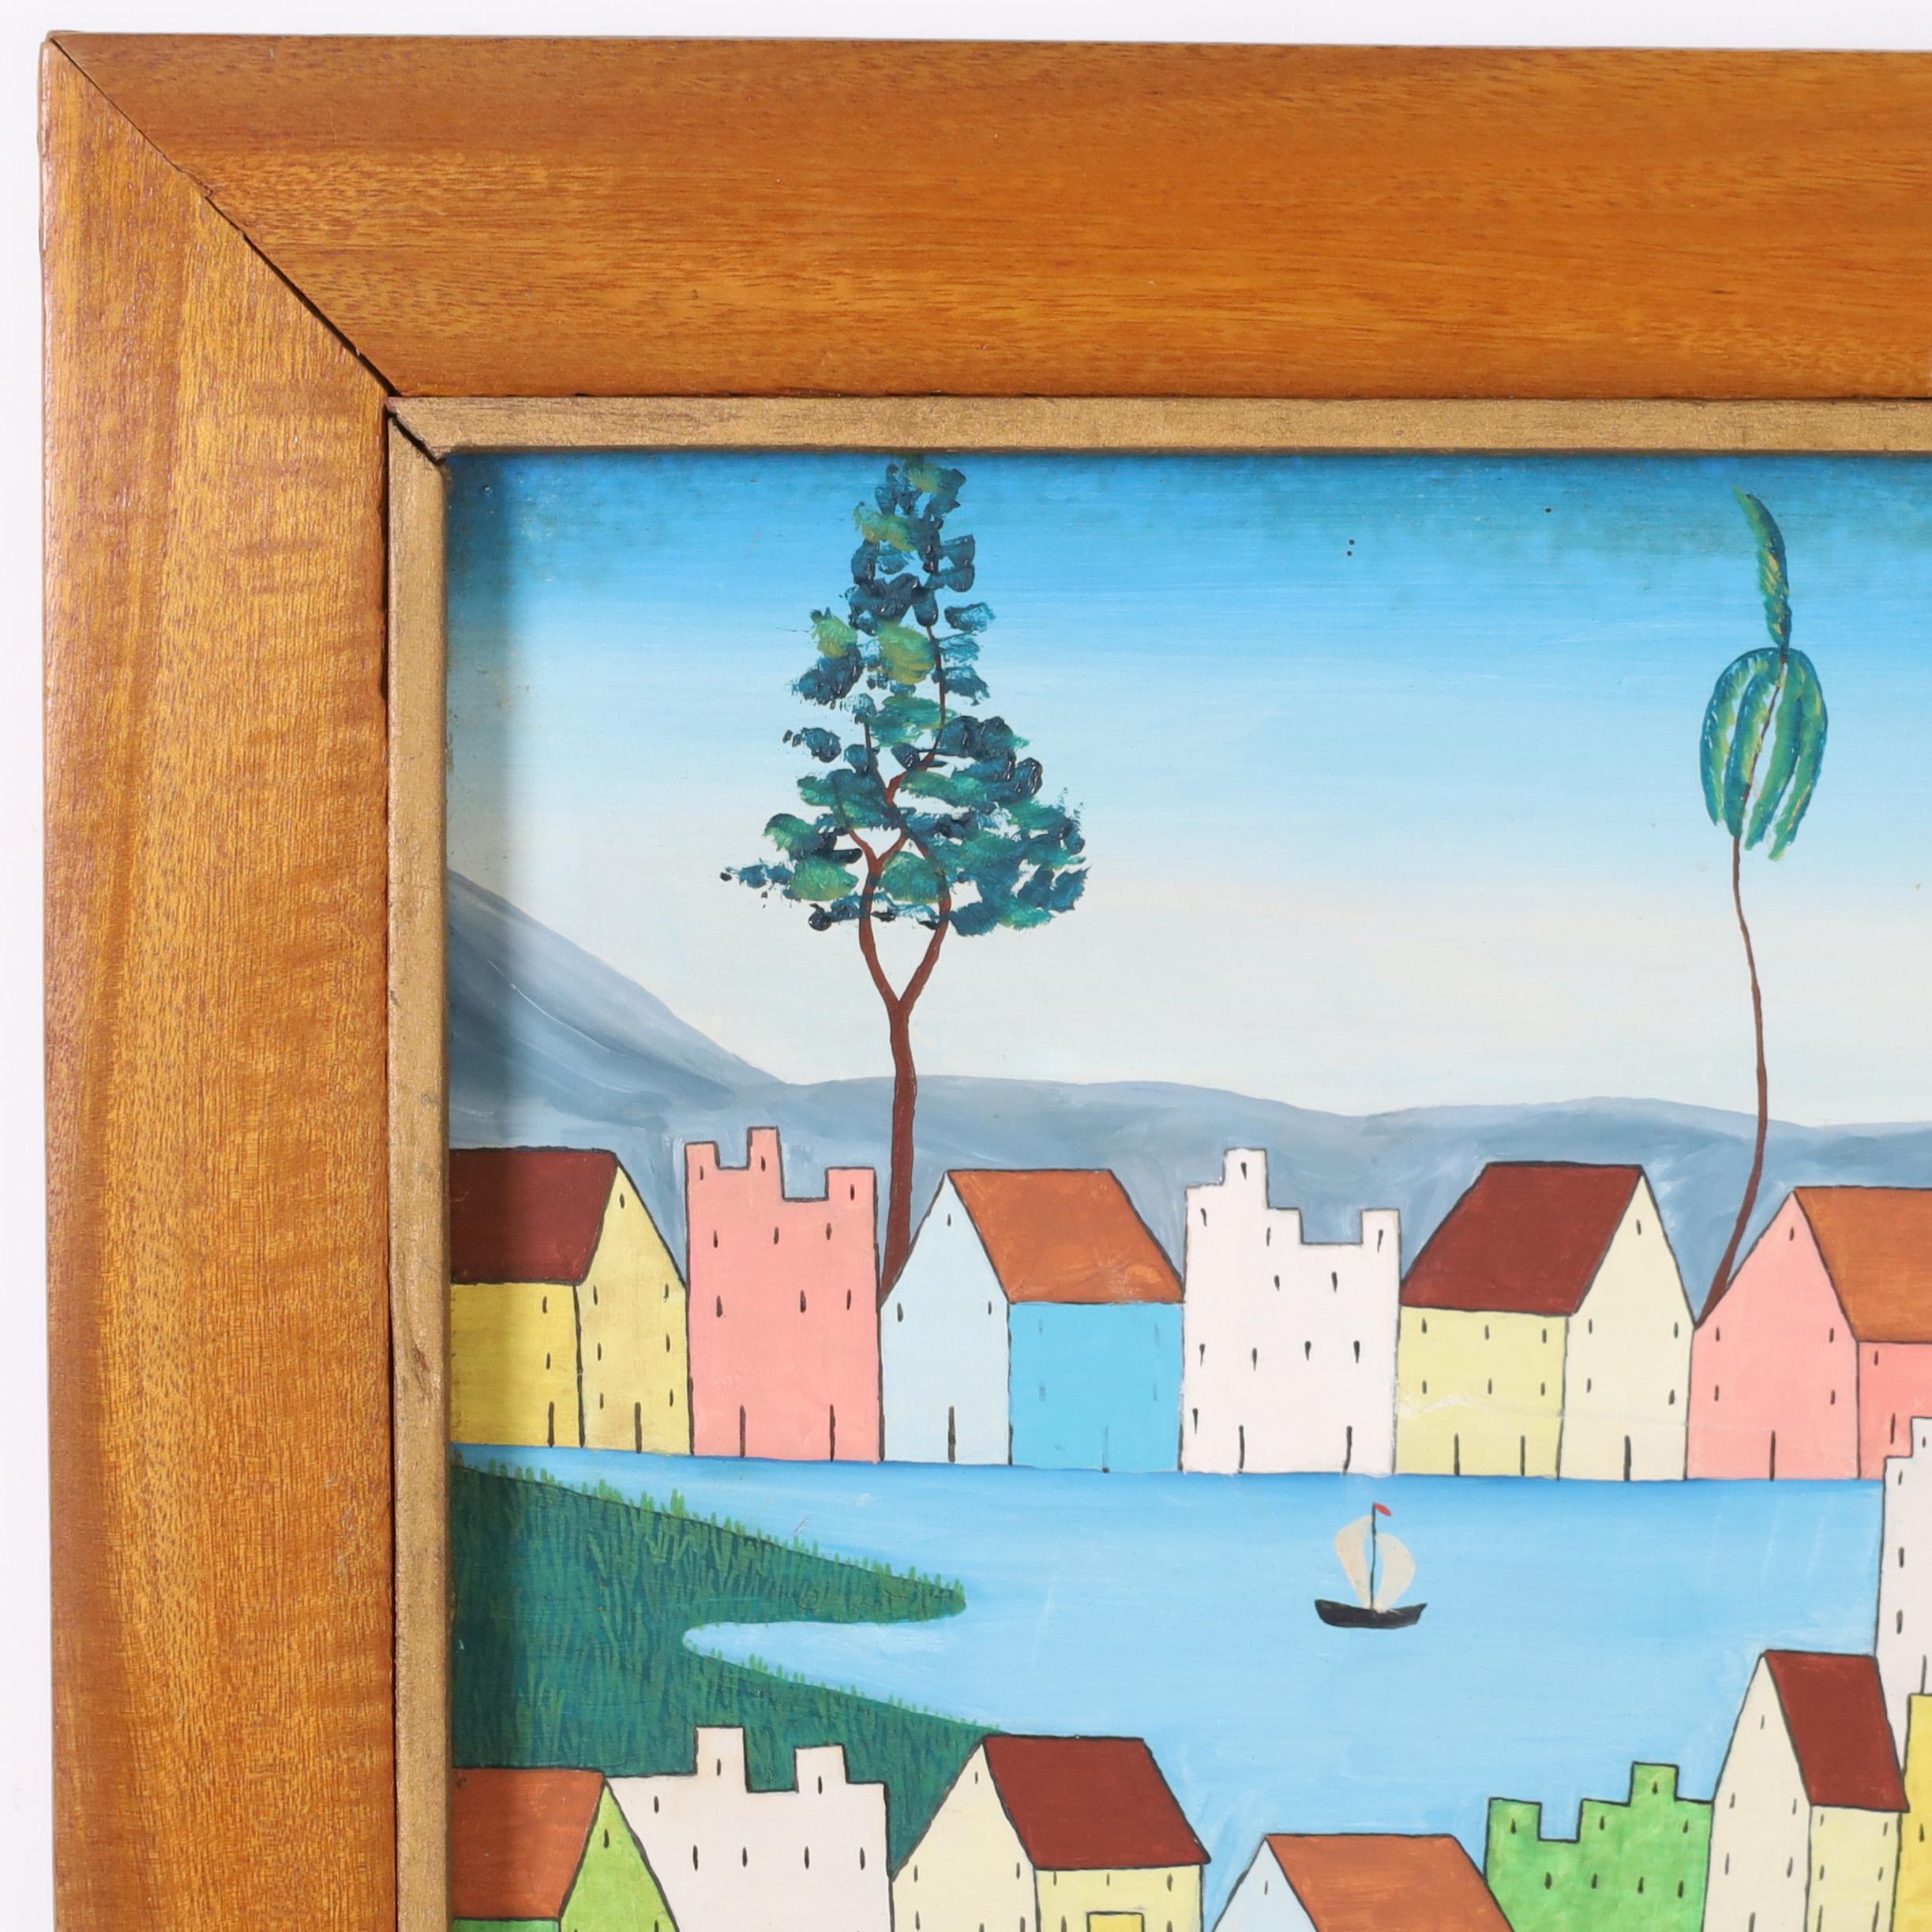 Haitianisches Vintage-Acrylgemälde auf Karton in einem ungewöhnlichen, minimalistisch-modernen Stil mit Häusern, Bäumen und Menschen. Signiert E. Abelard und präsentiert in einem Mahagoni-Rahmen.